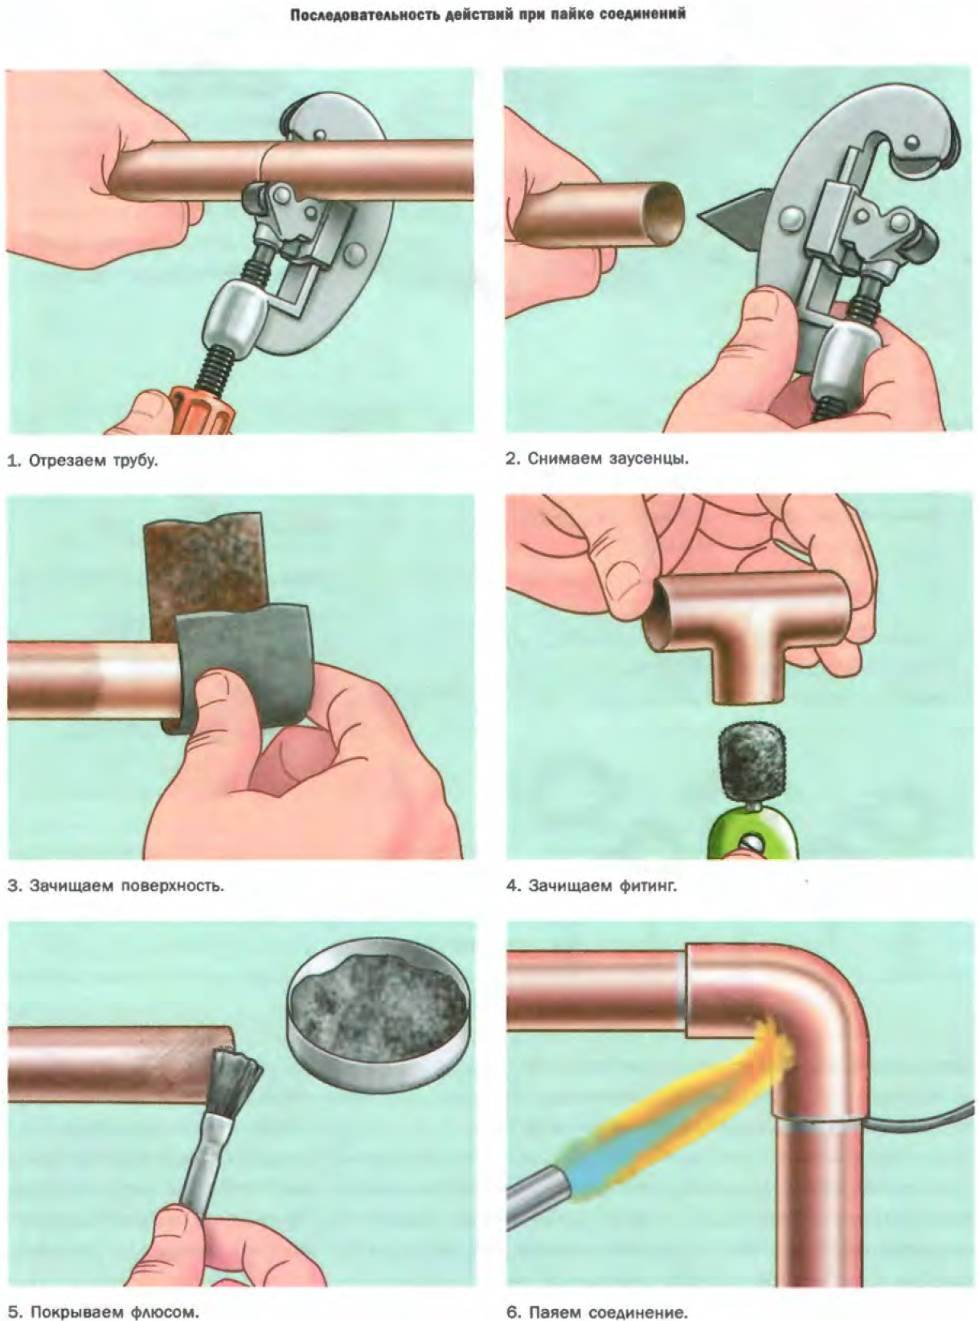 Нарезка резьбы на трубы: доступные способы и методы их применения